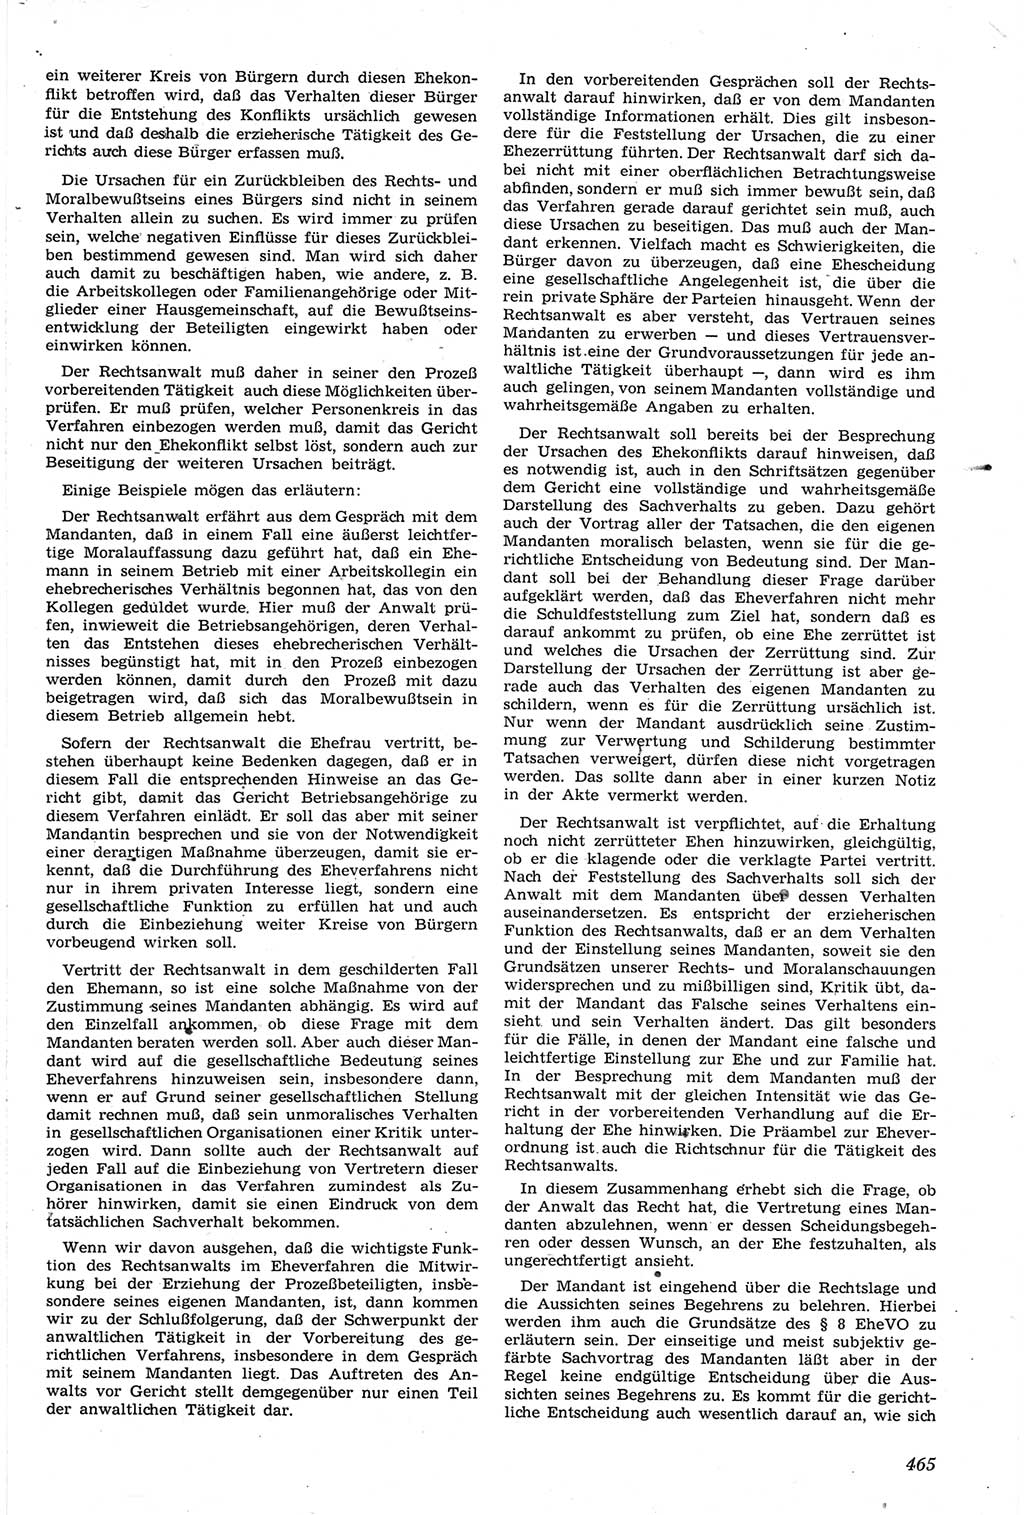 Neue Justiz (NJ), Zeitschrift für Recht und Rechtswissenschaft [Deutsche Demokratische Republik (DDR)], 14. Jahrgang 1960, Seite 465 (NJ DDR 1960, S. 465)